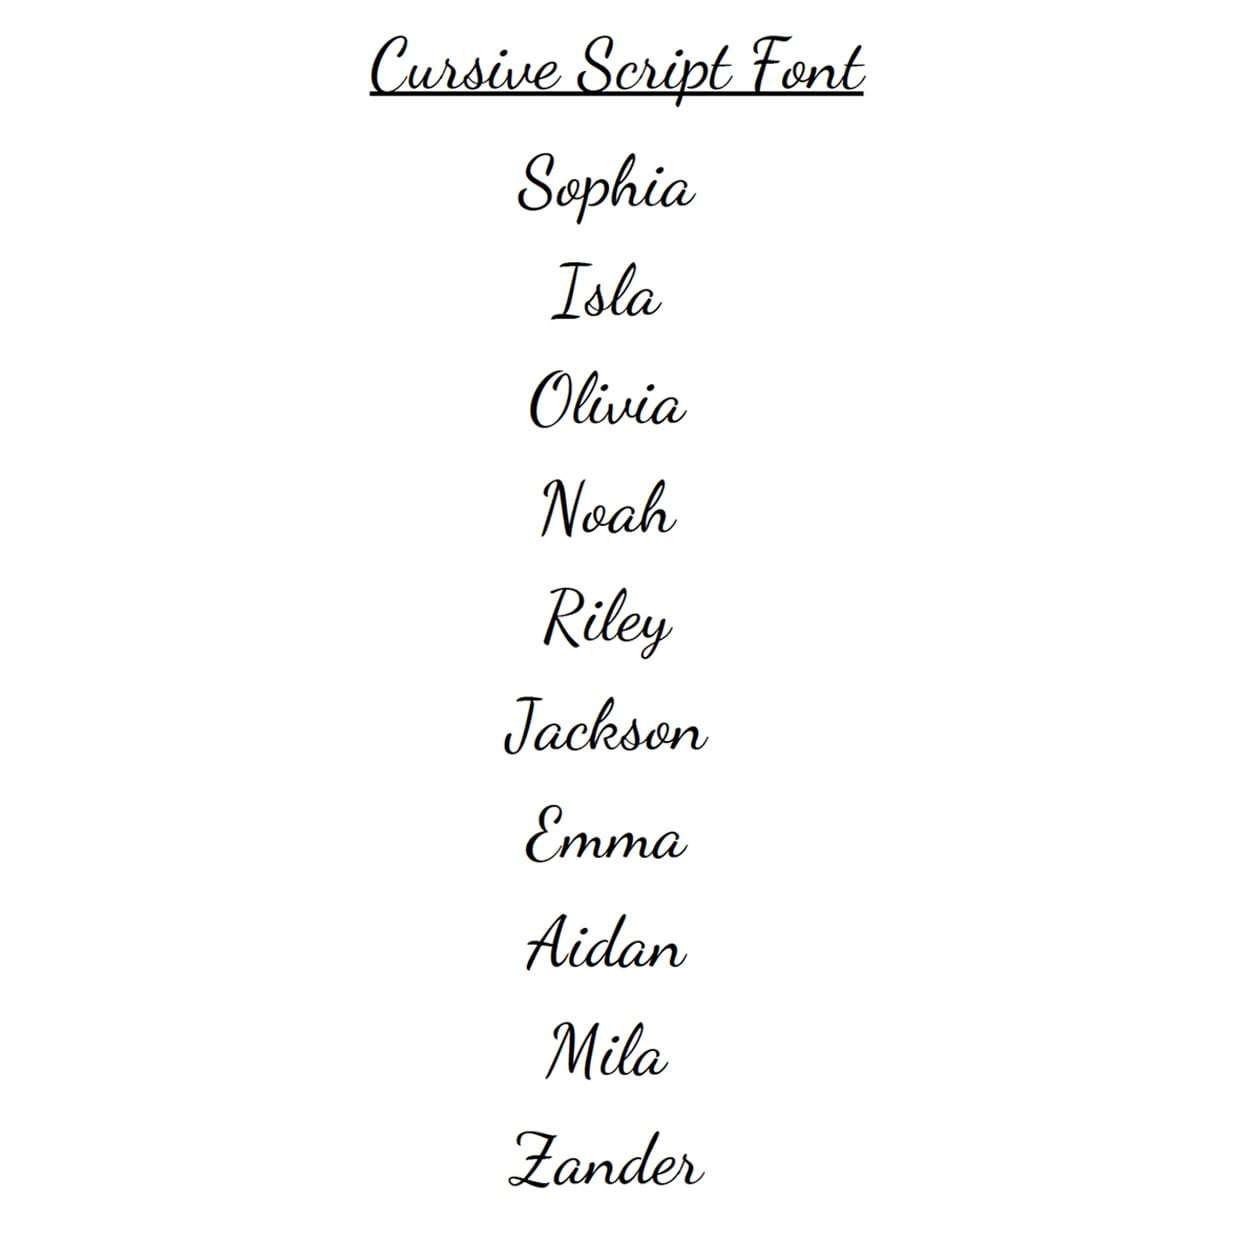 Cursive Script fonts